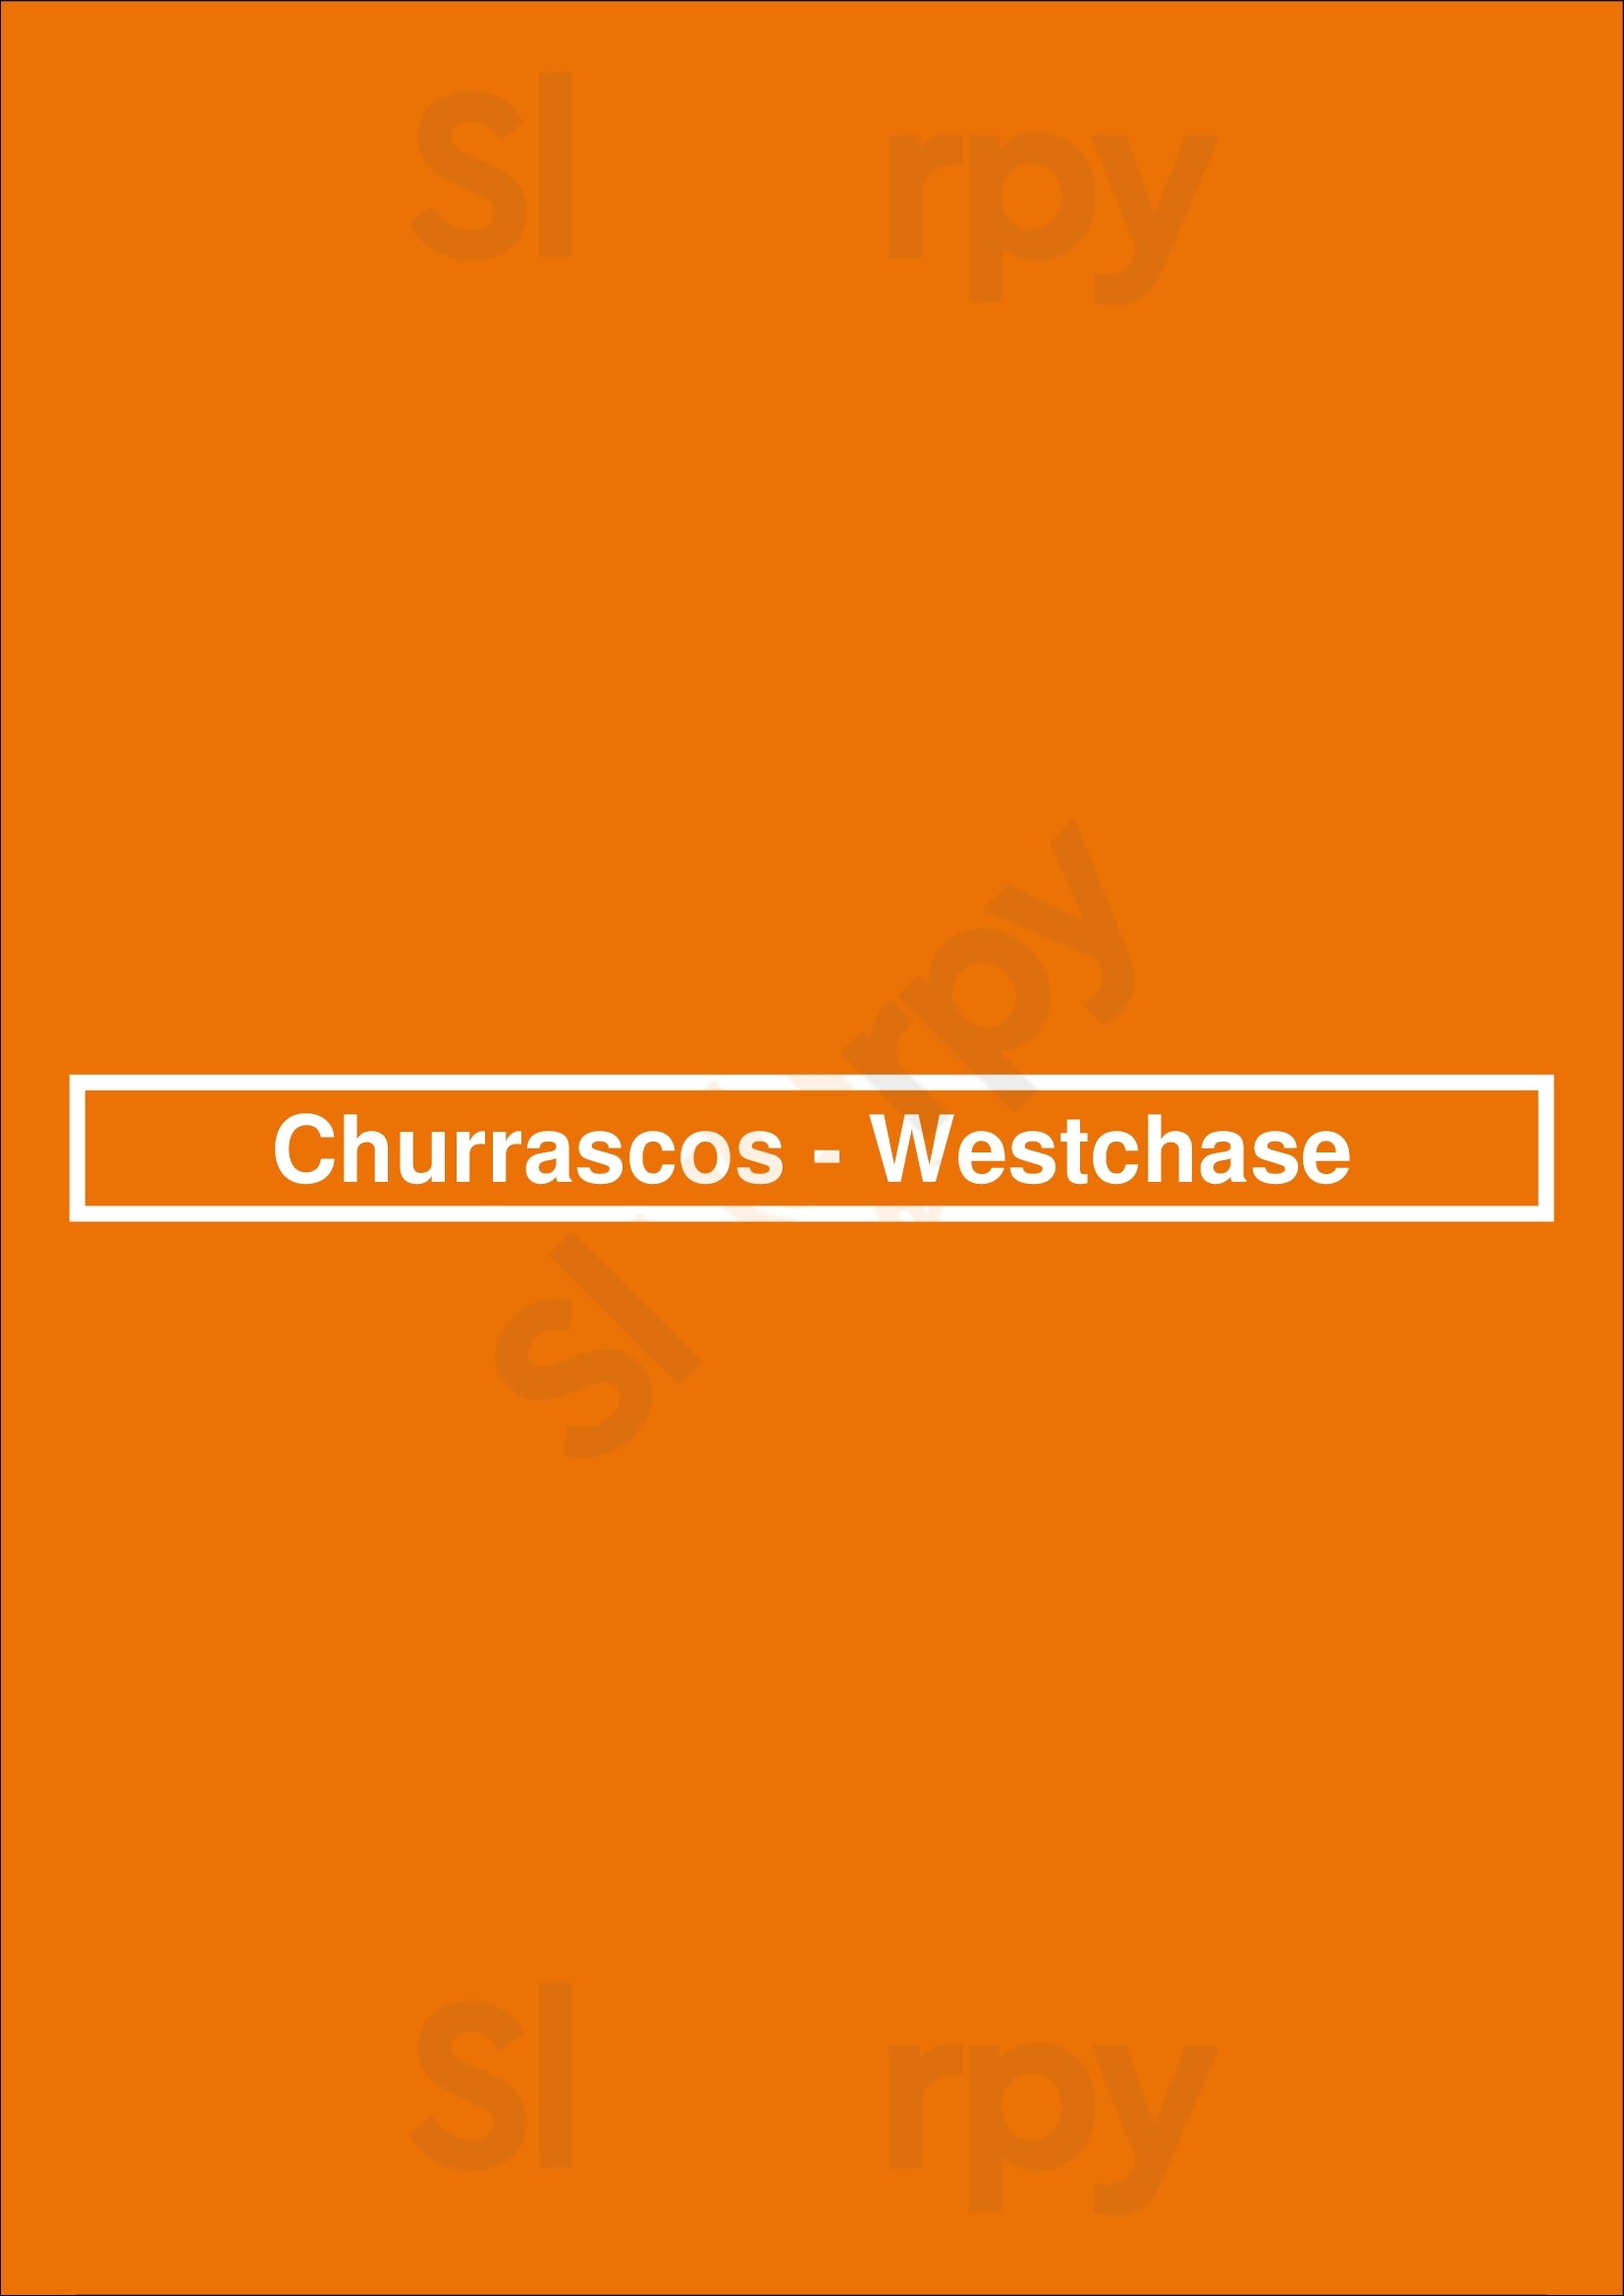 Churrascos - Westchase Houston Menu - 1